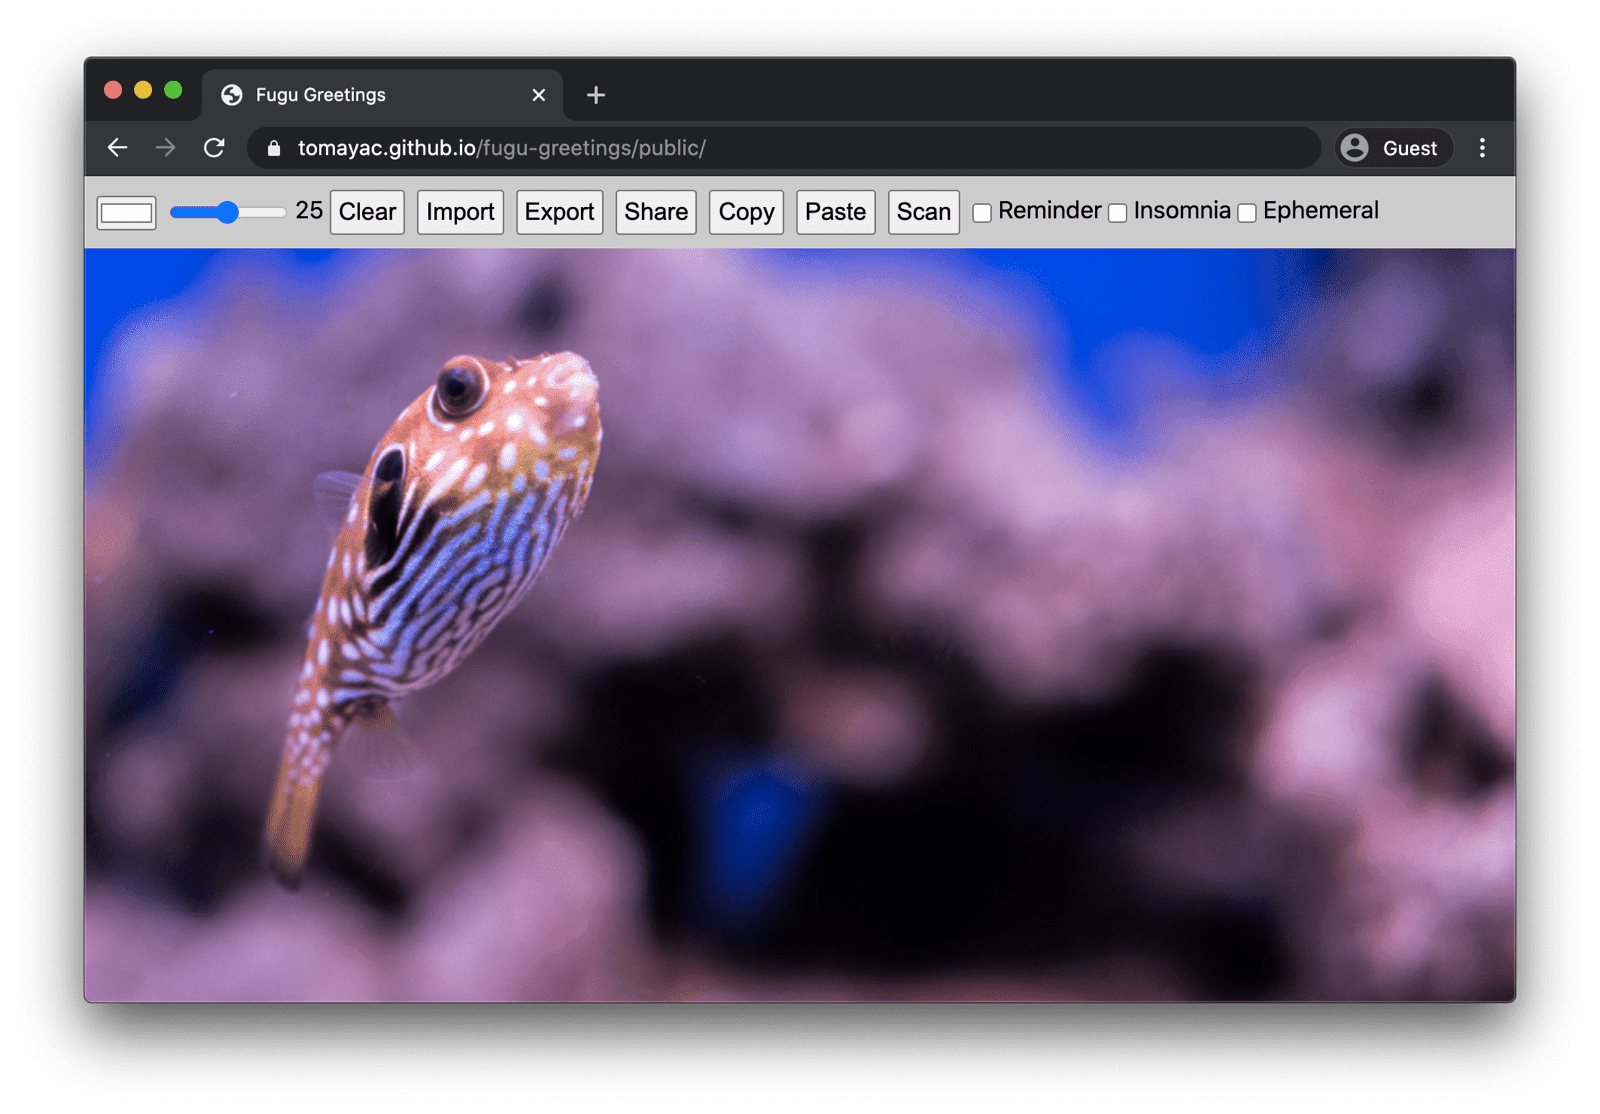 Fugu Greetings in esecuzione su Chrome desktop che mostra molte funzionalità disponibili.